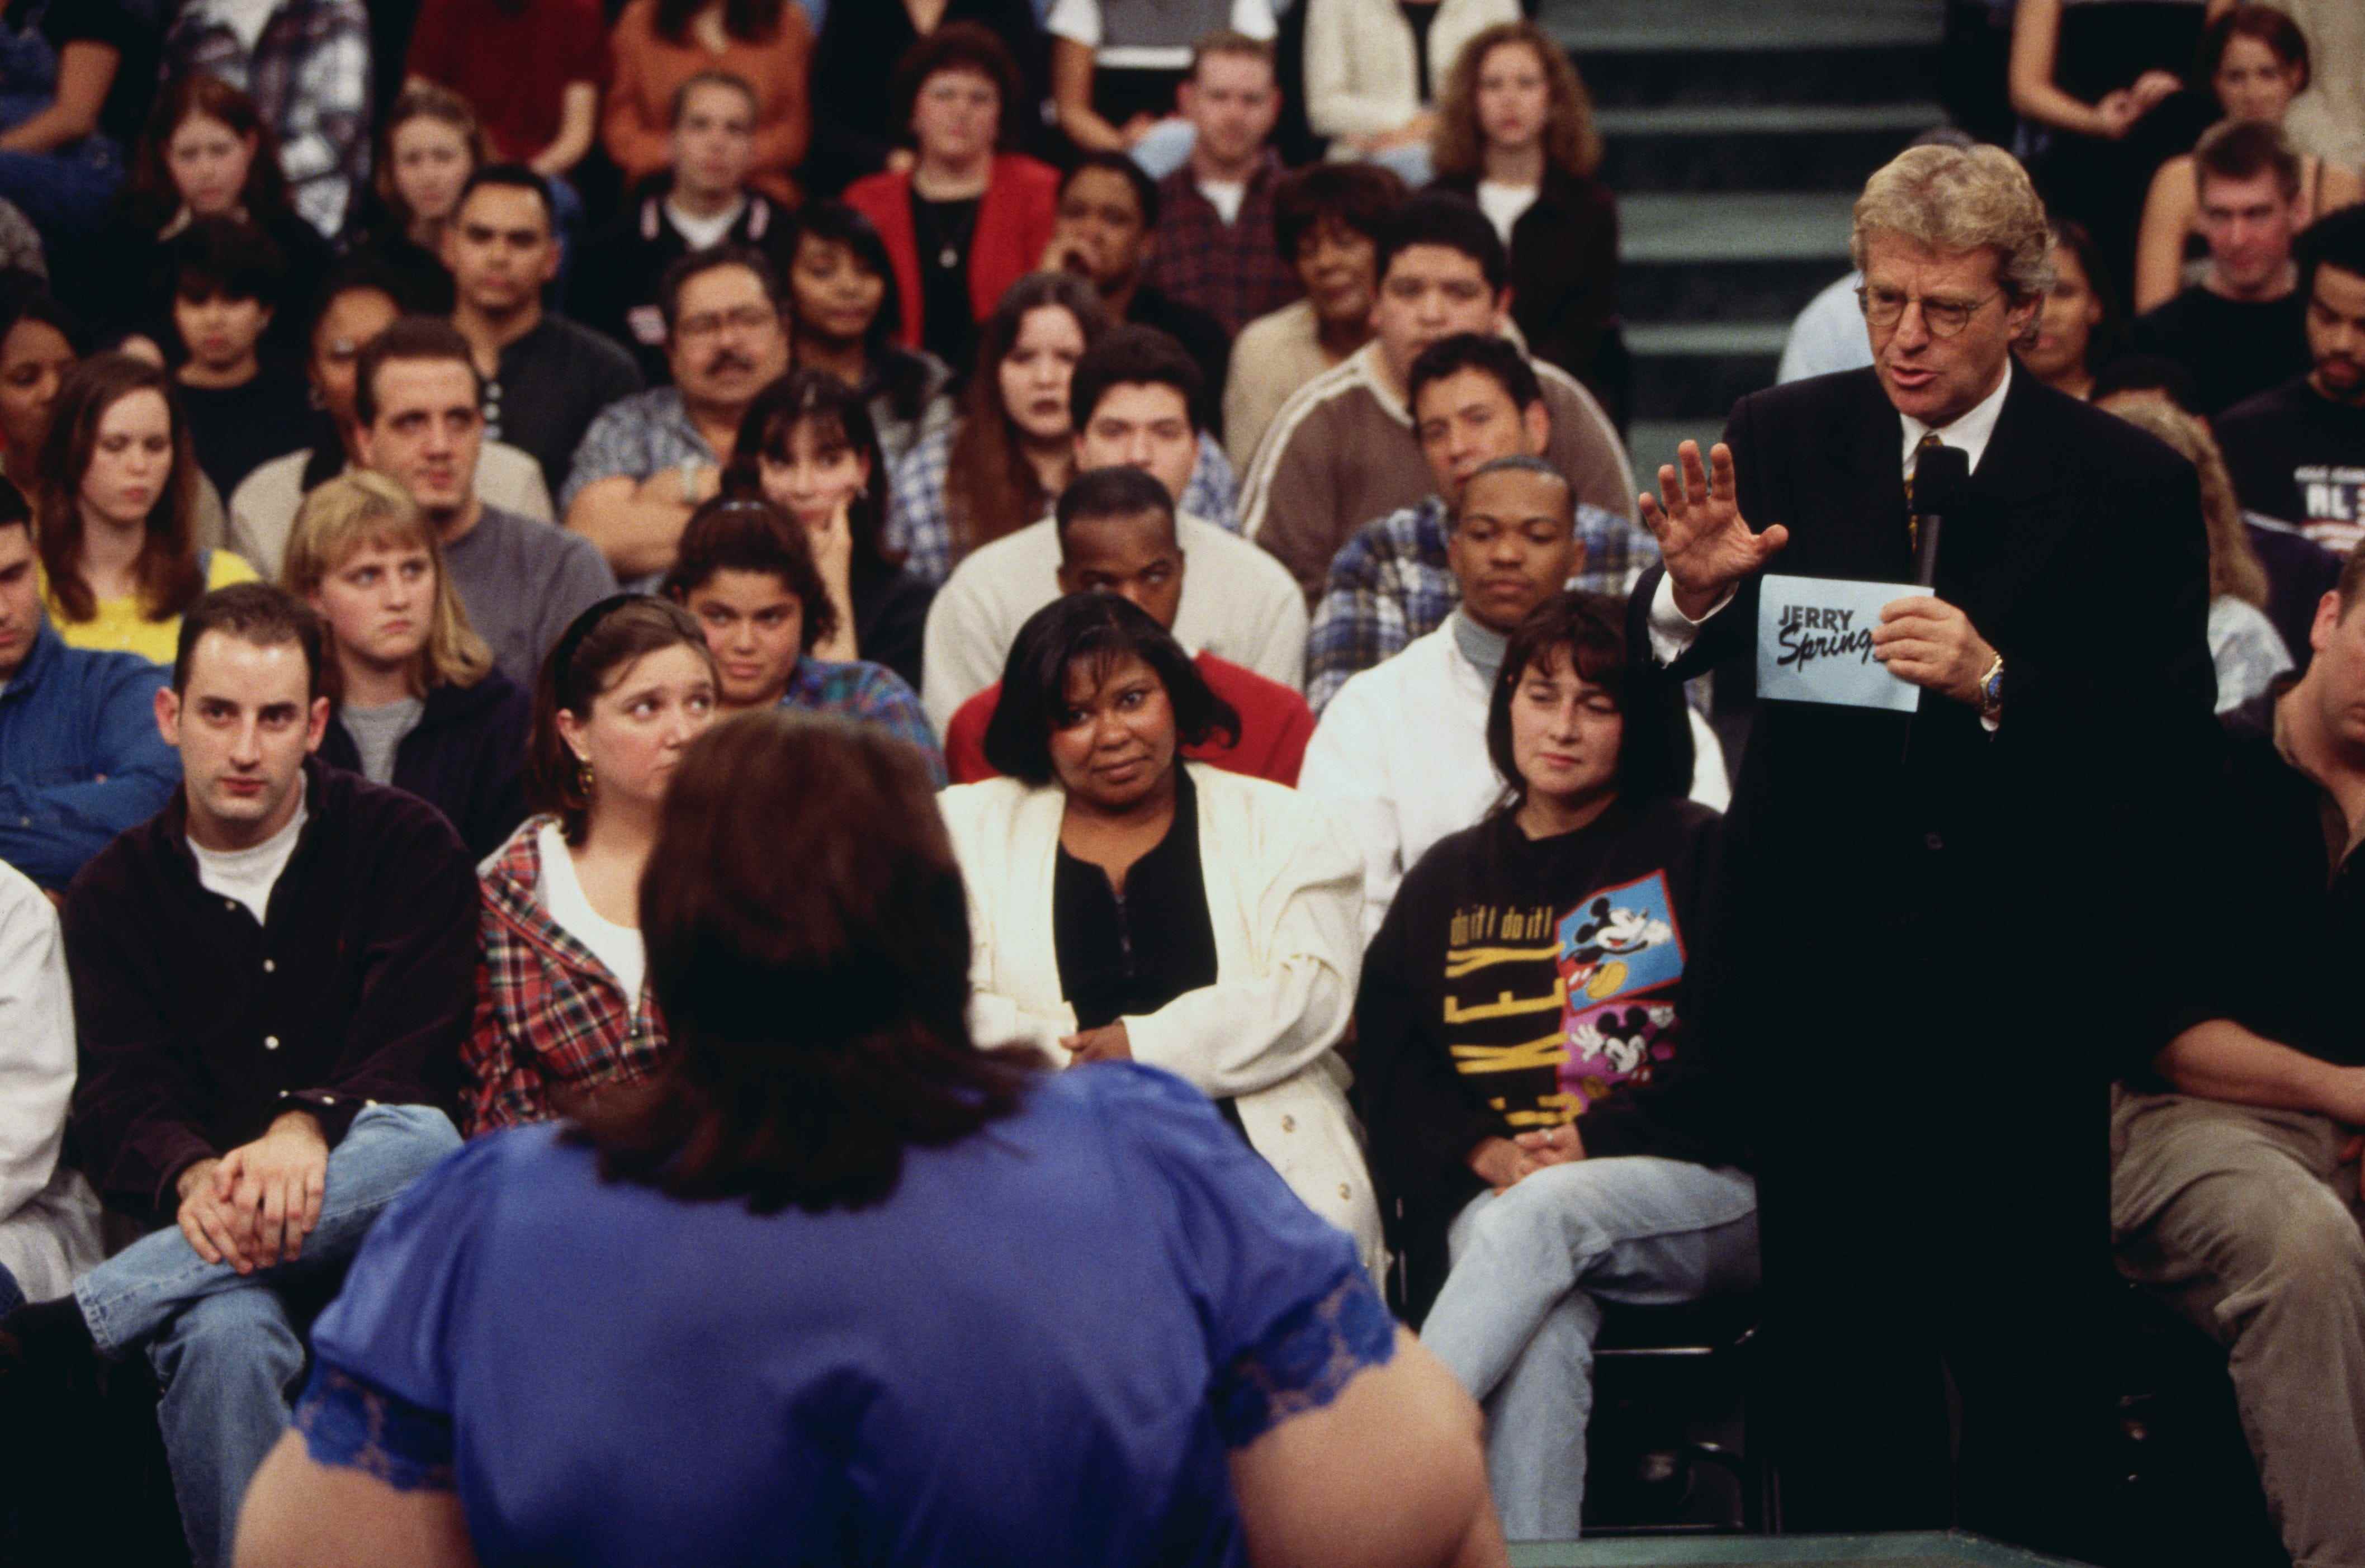 Jerry Springer spricht mit seinen Gästen und dem Publikum am Set der Jerry Springer Show.